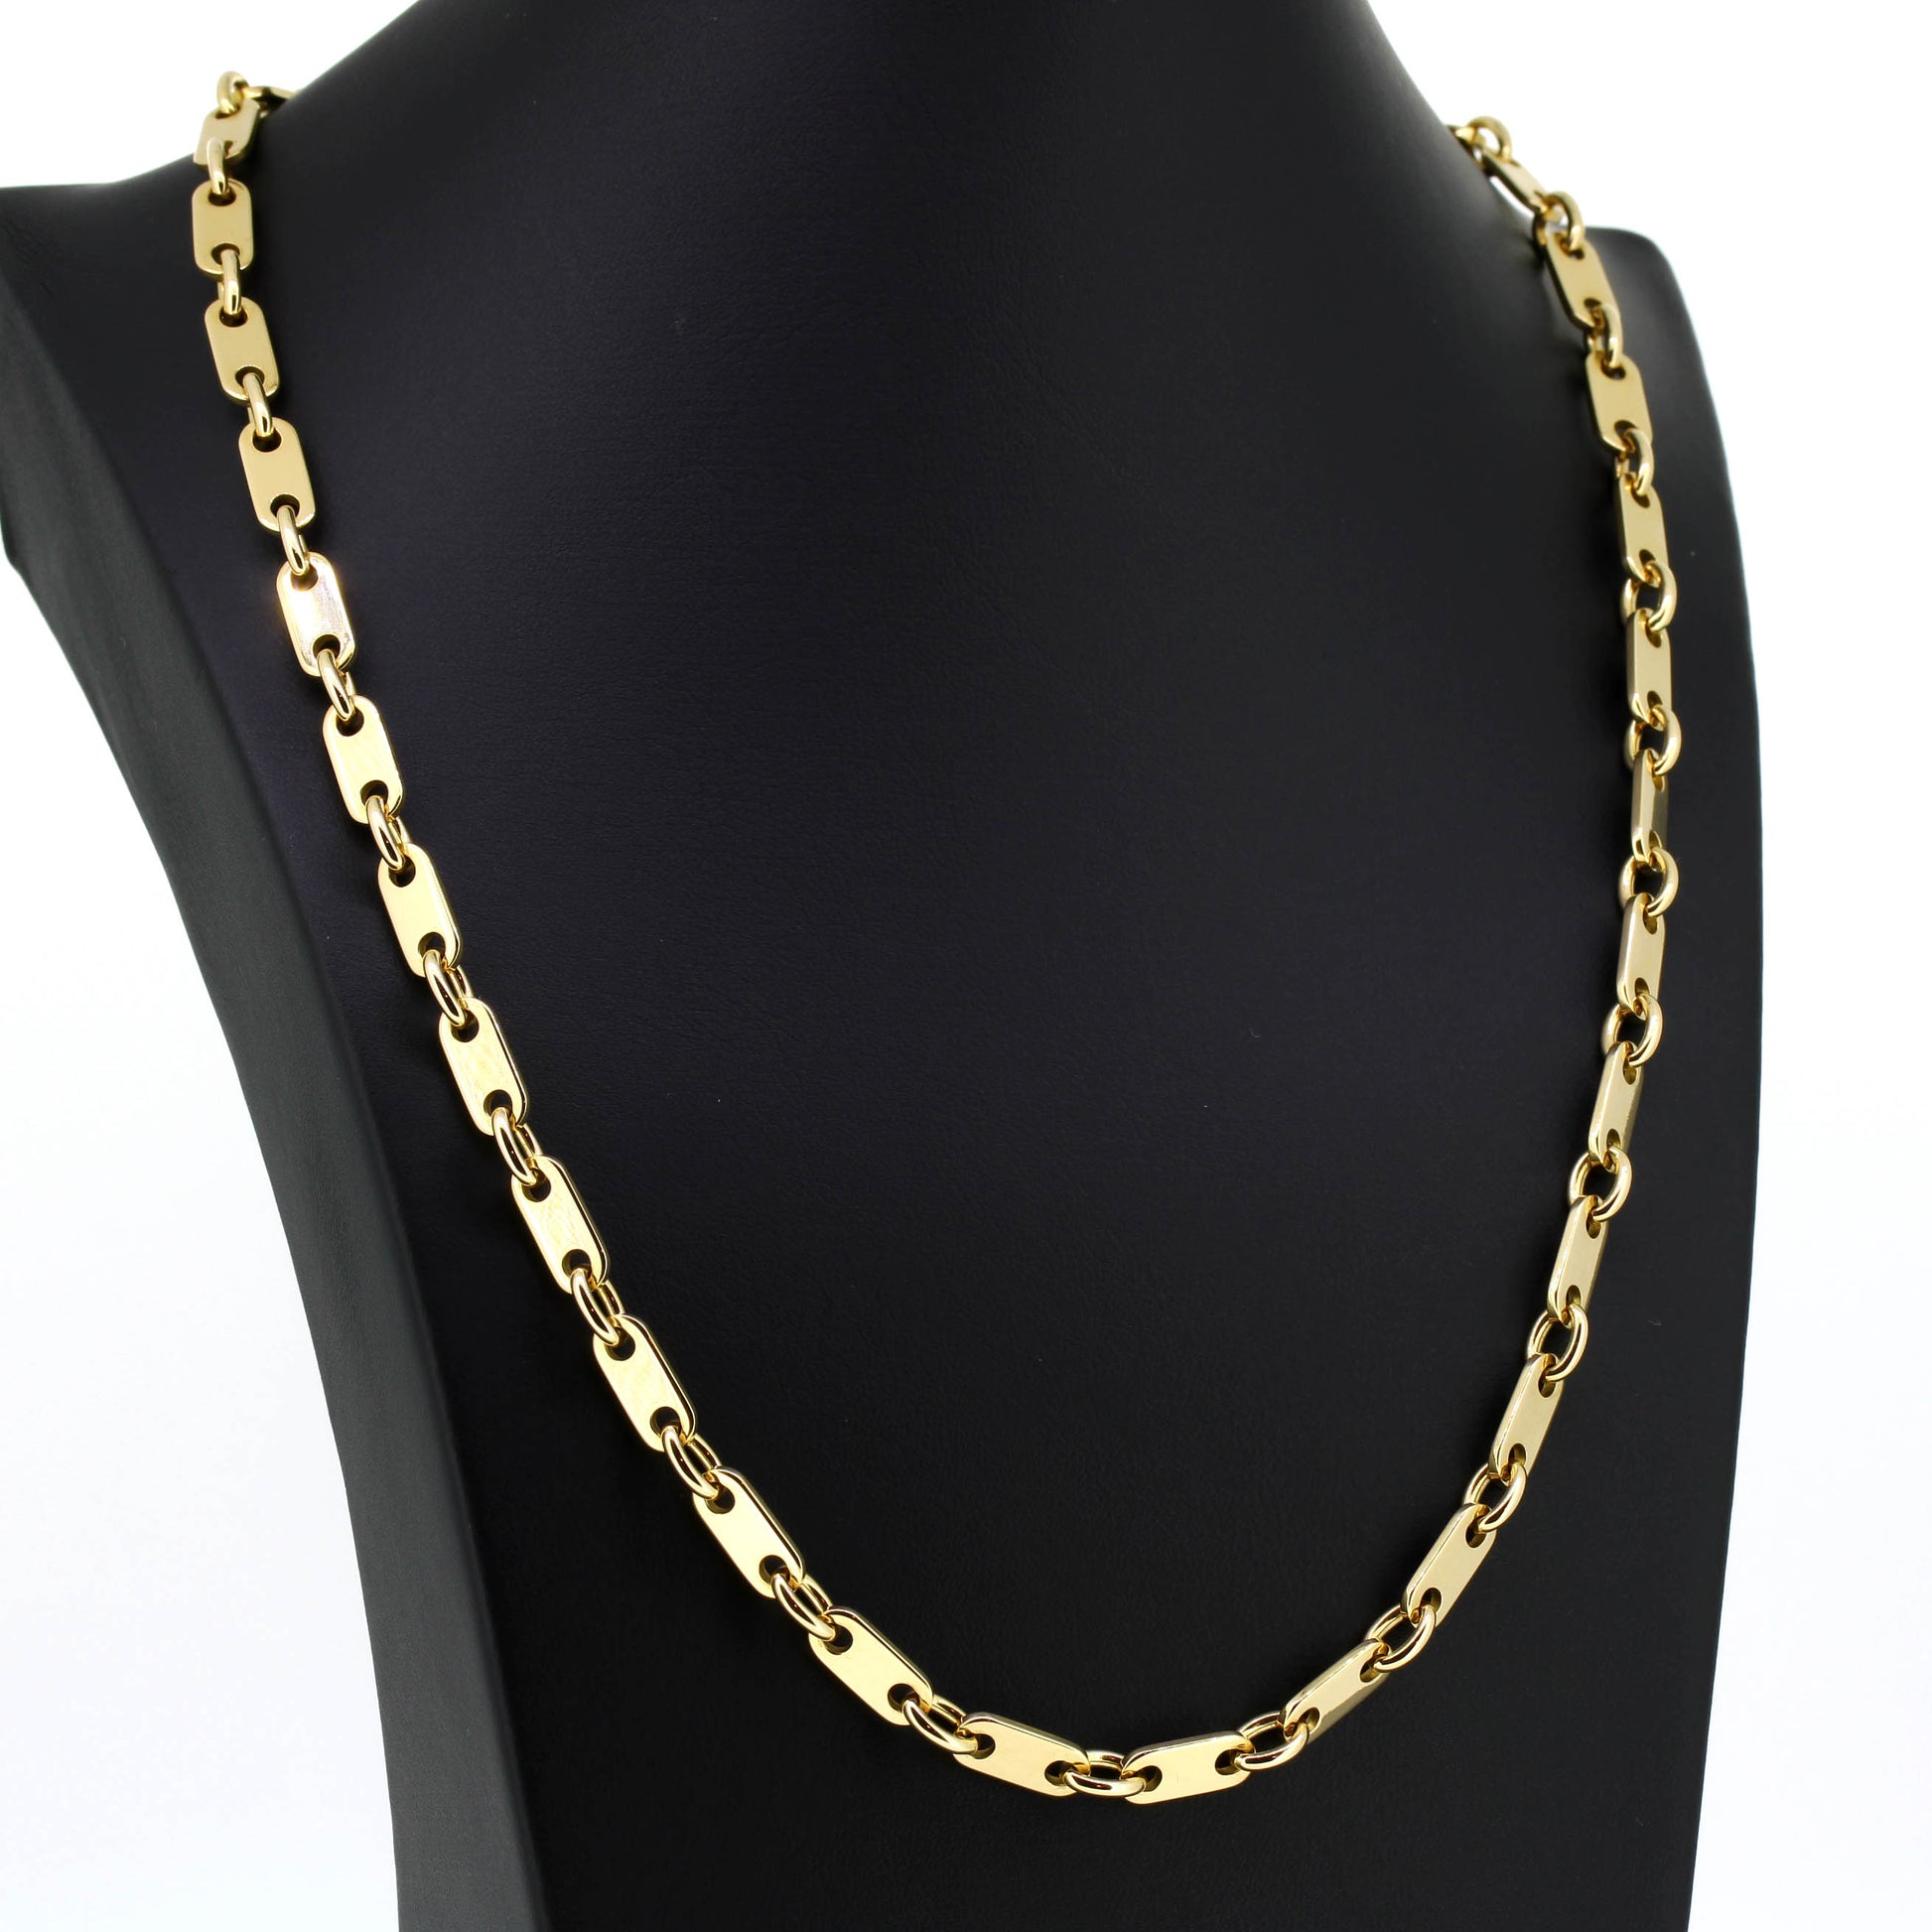 Platten Halskette 750 Gold 18 Kt Gelbgold - Kettenlänge 54 cm - Wert 6 –  Juwelier Eberle